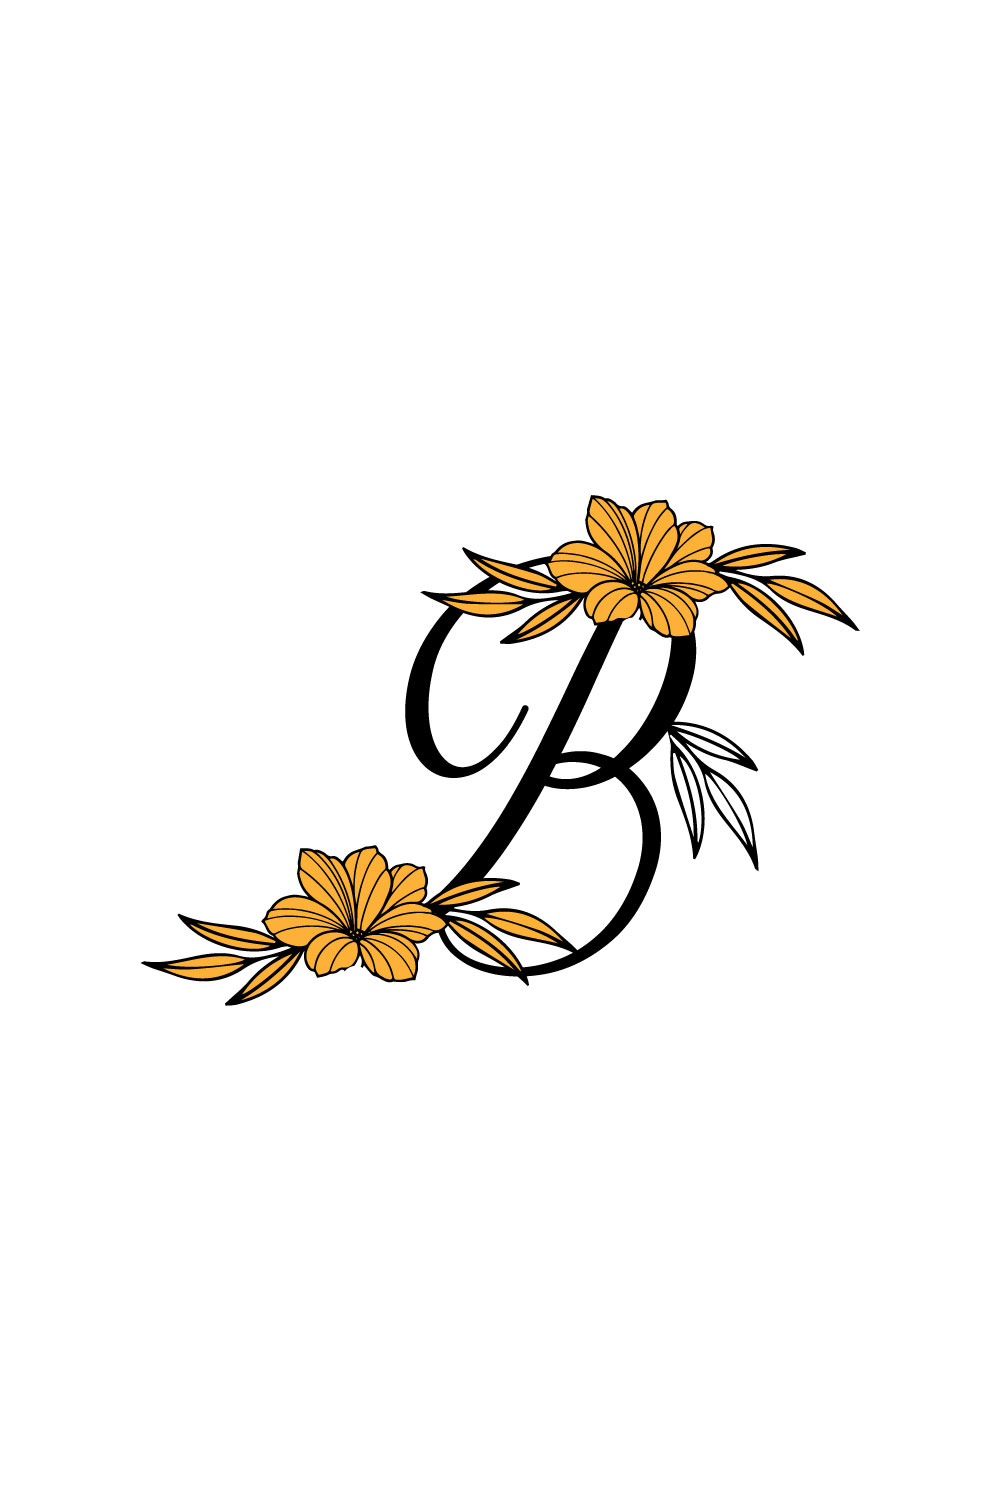 Free B Letter Flower Logo pinterest preview image.